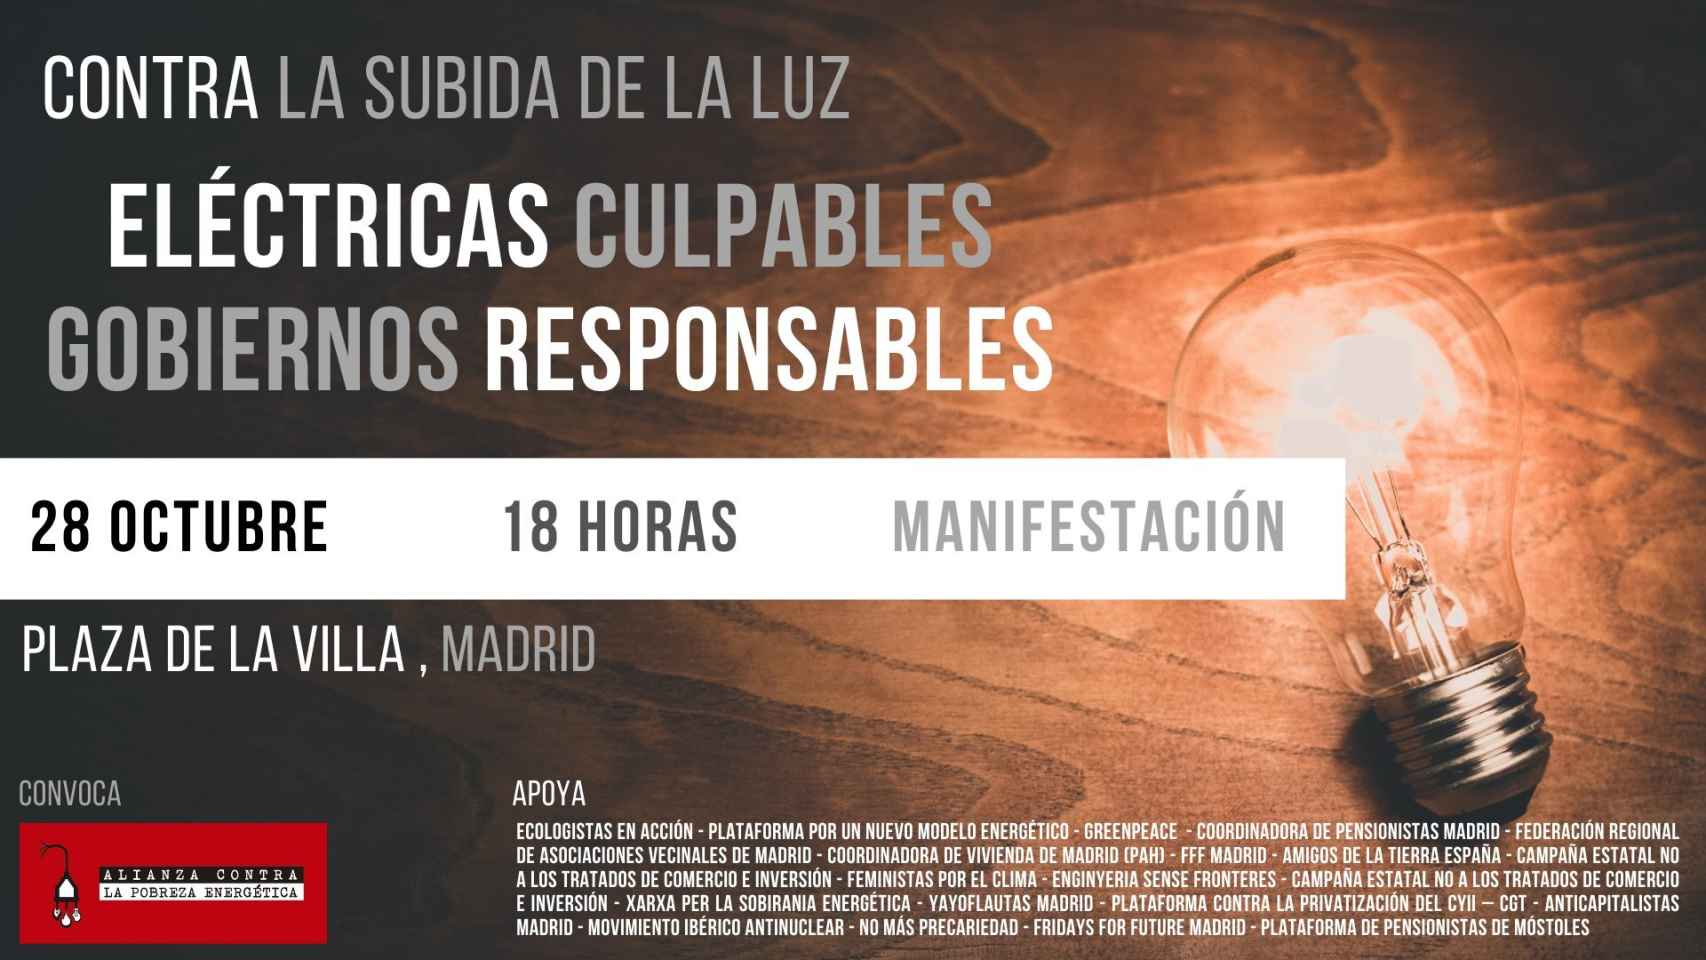 La manifestación contra la subida de la luz será el 28 de octubre en Madrid.